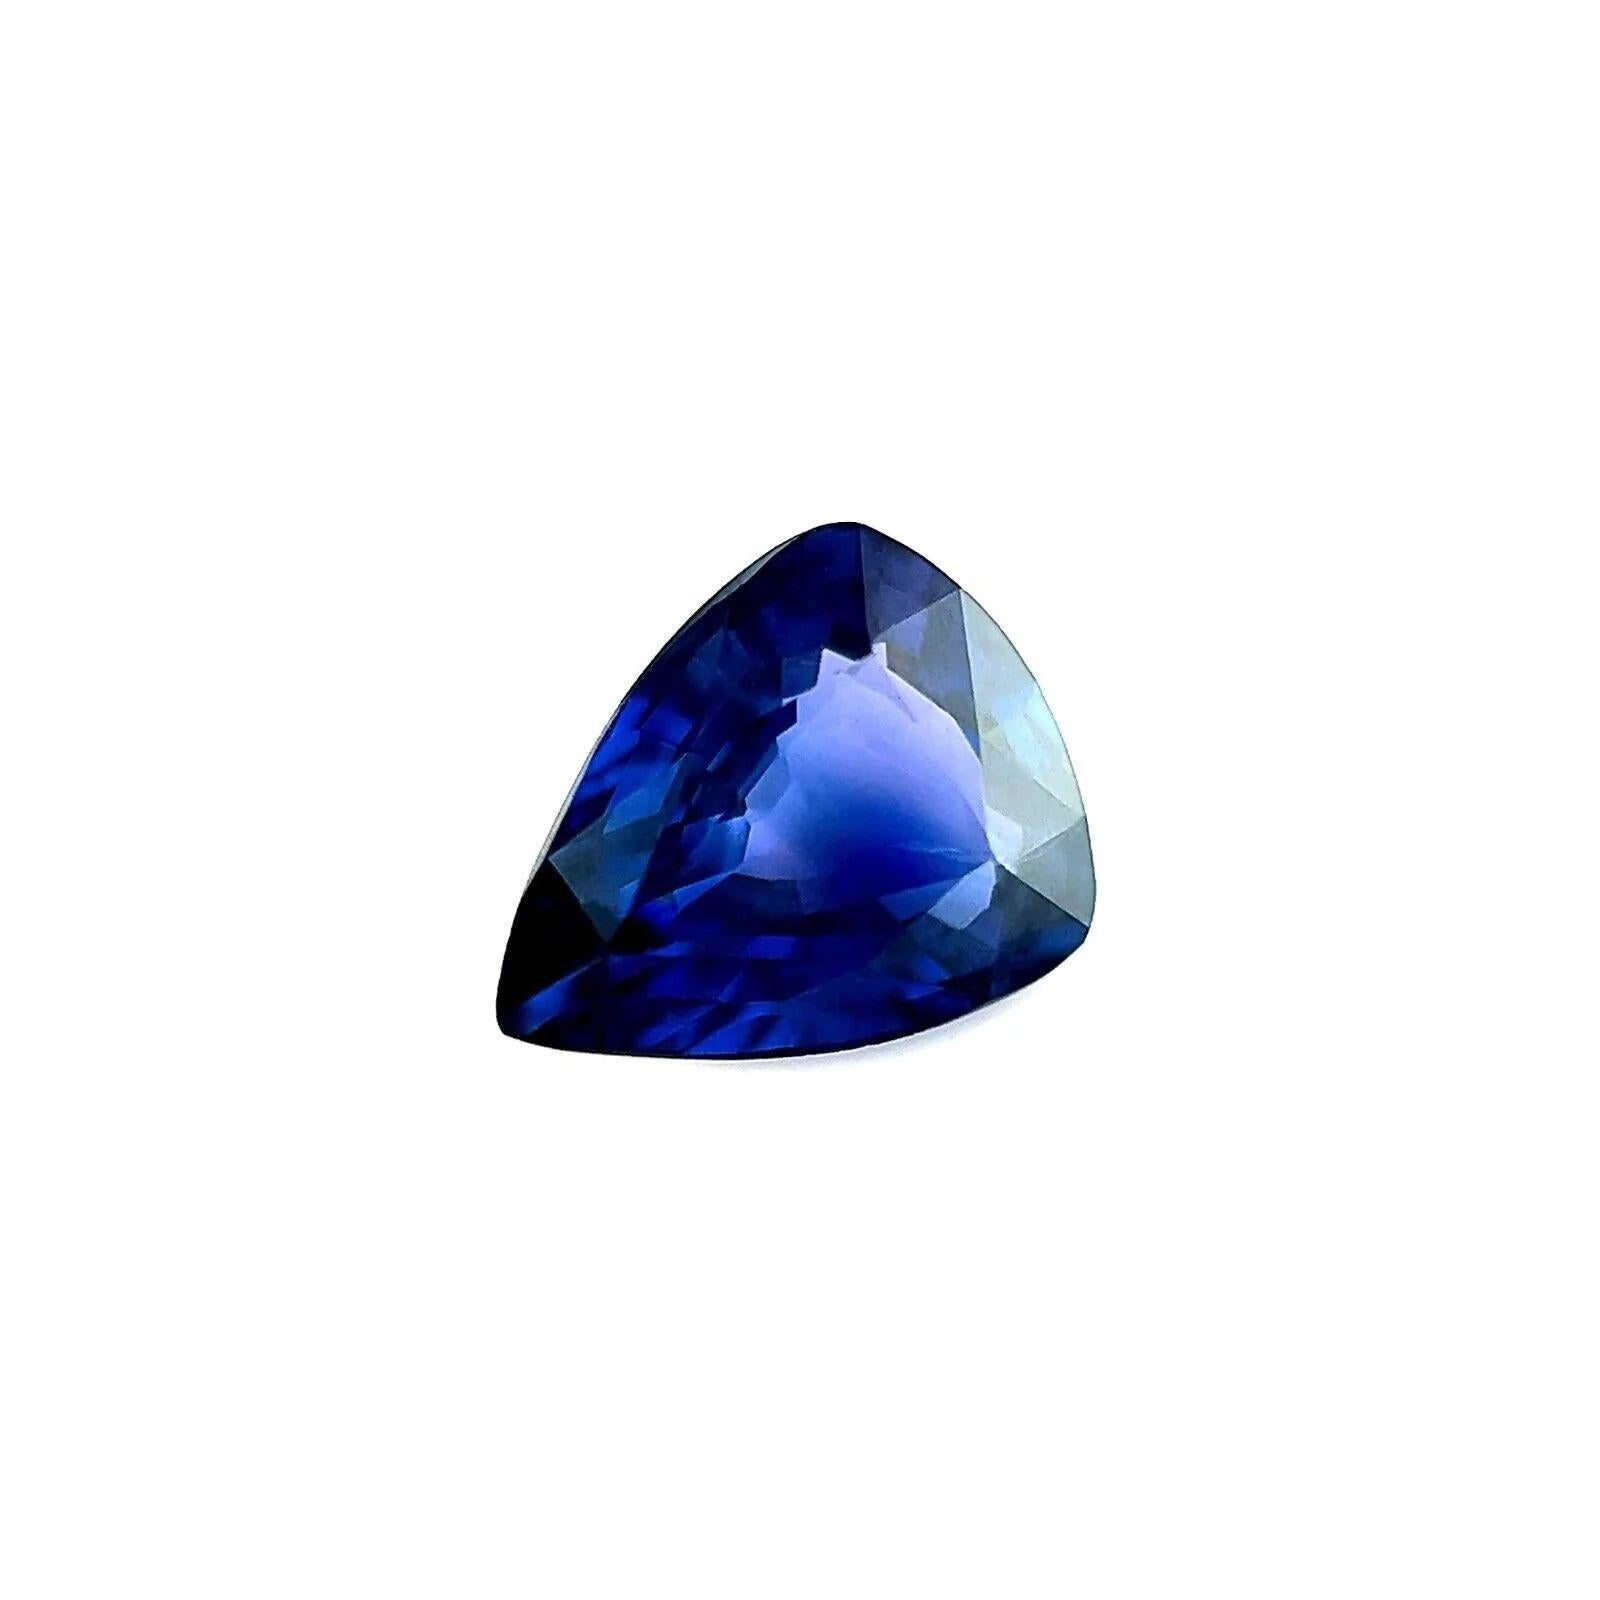 1.04ct Deep Blue GIA Certified Untreated Sapphire Pear Cut Rare Gem 7.3x5.8mm

Saphir bleu fin certifié par la GIA.
Saphir de 1,04 carat d'une belle couleur bleu foncé.
Entièrement certifiée par le GIA confirmant que la pierre est naturelle.